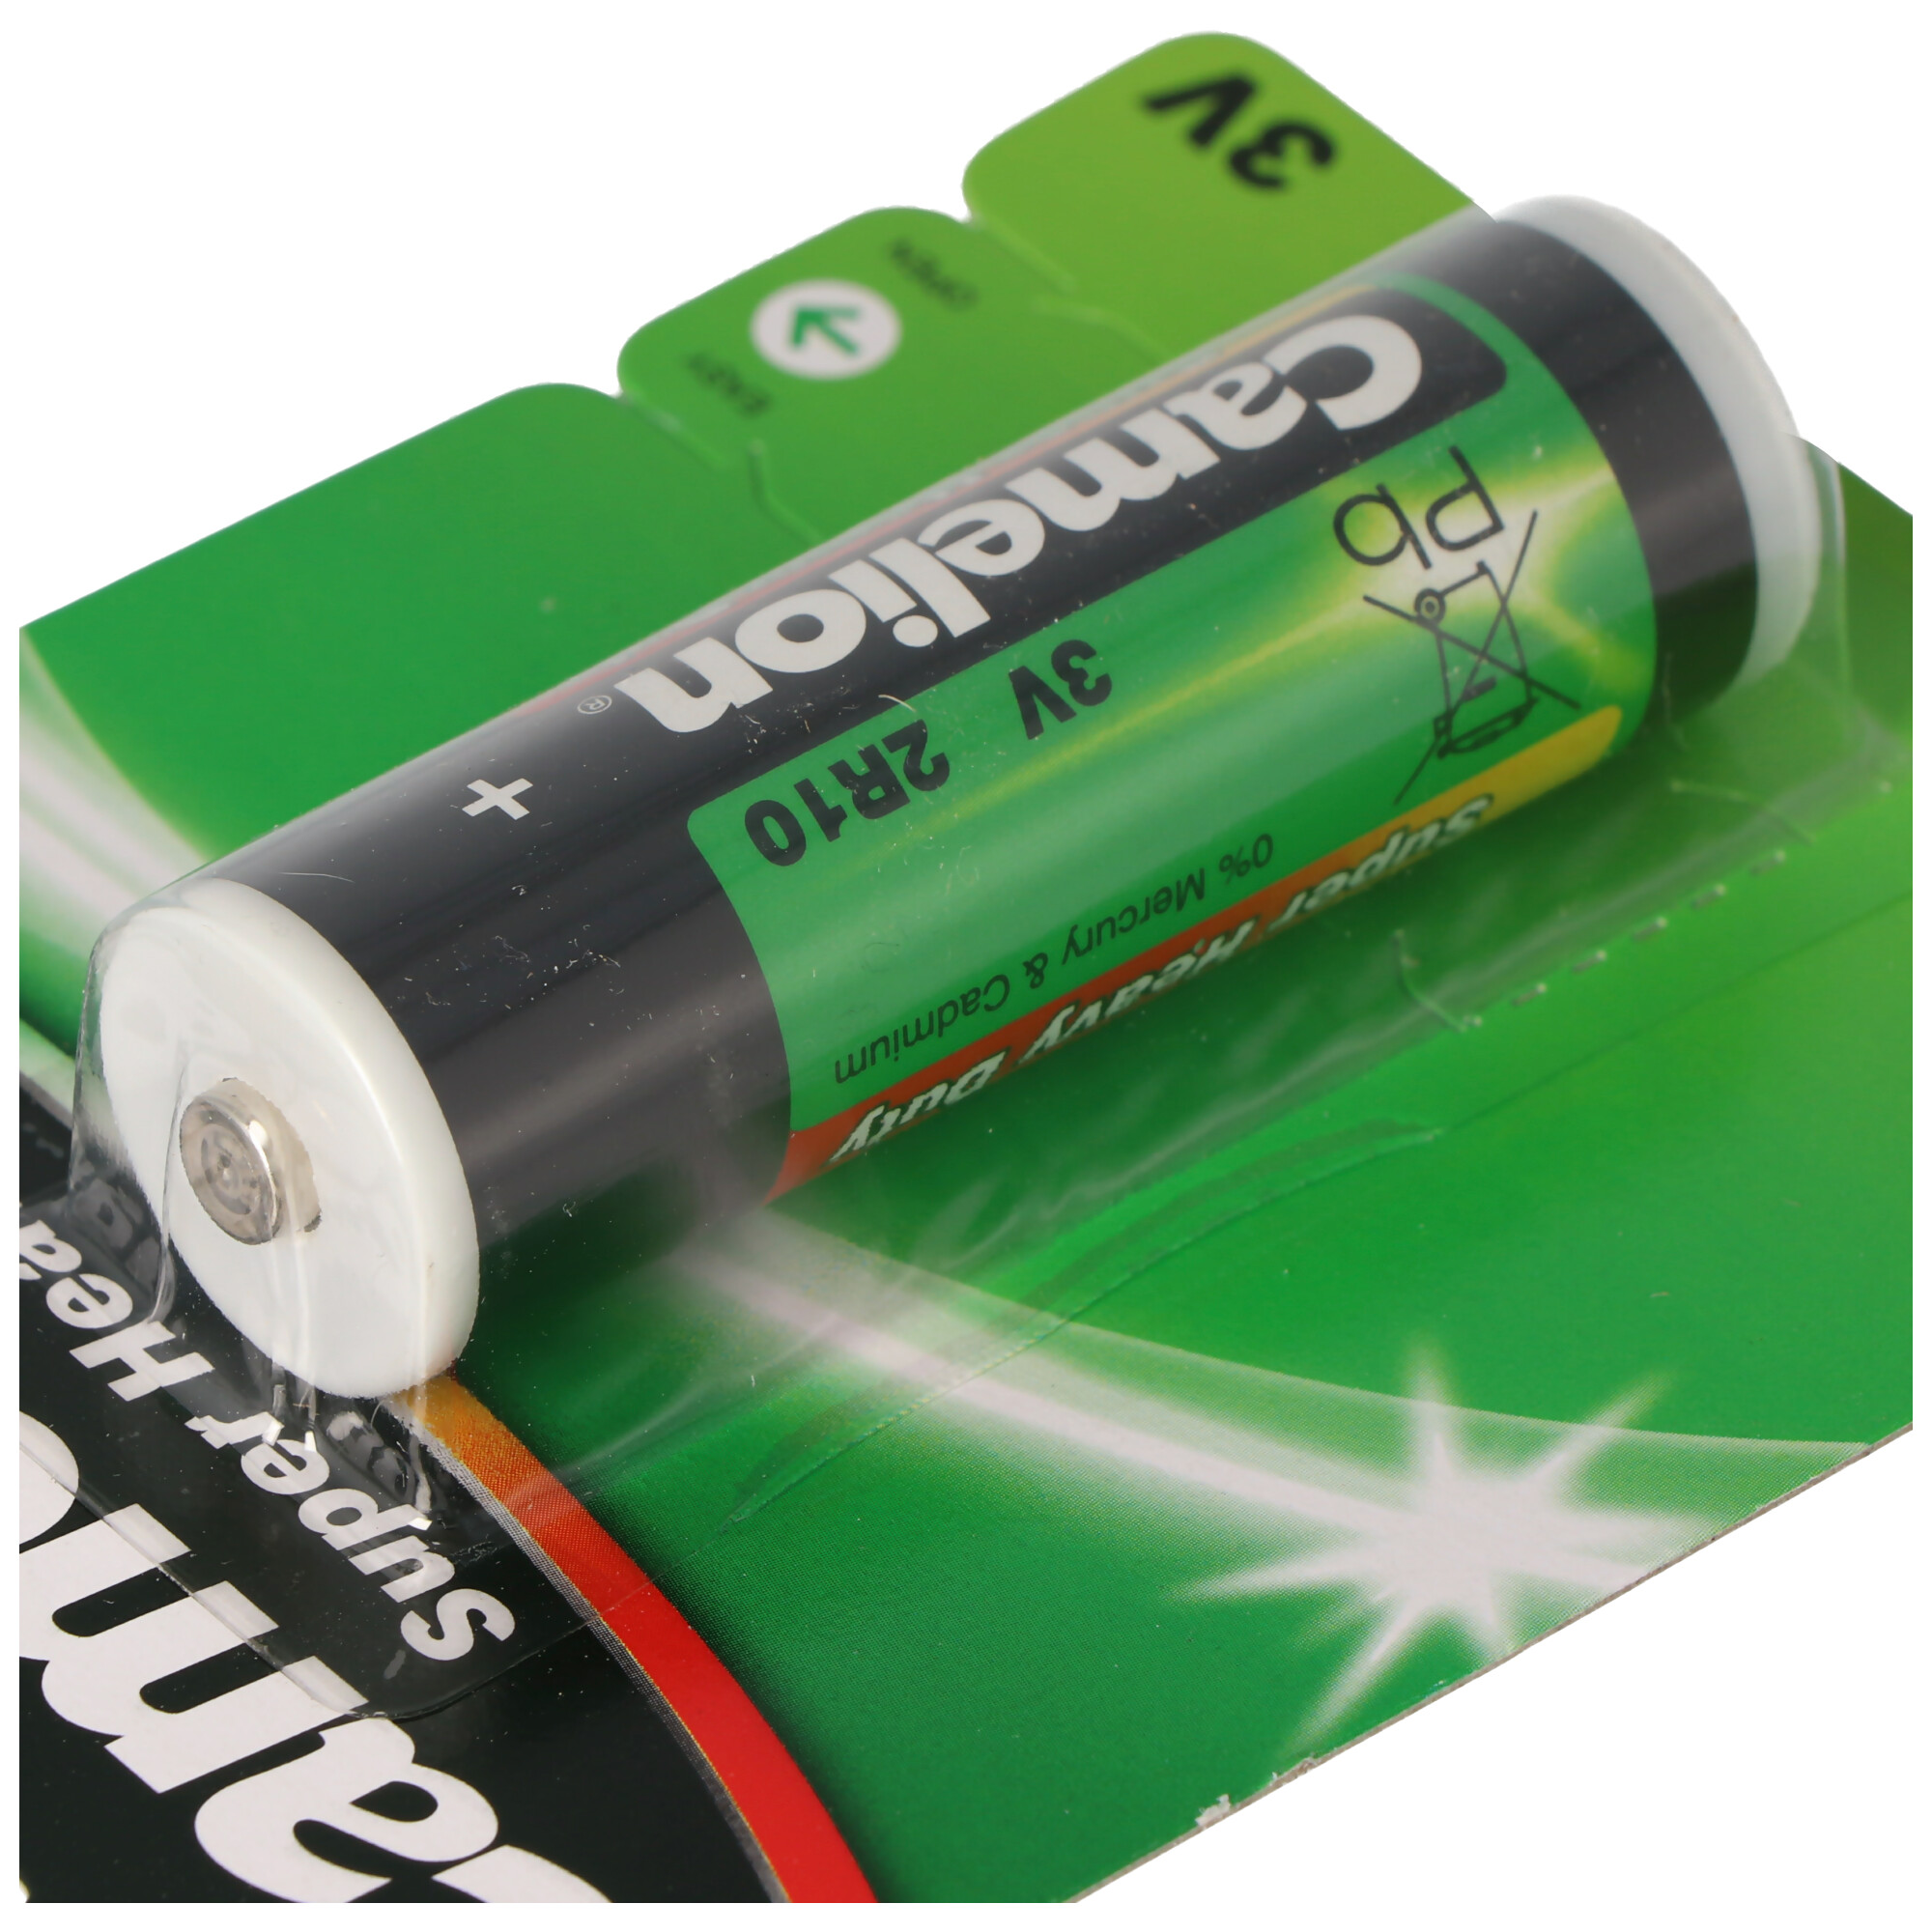 Batterie 2R10 Duplex Stab-Batterie, 2R10R, 3010, 2010, 3,0 Volt 73x21mm max. 600mAh, letzte Produktion 6 2019